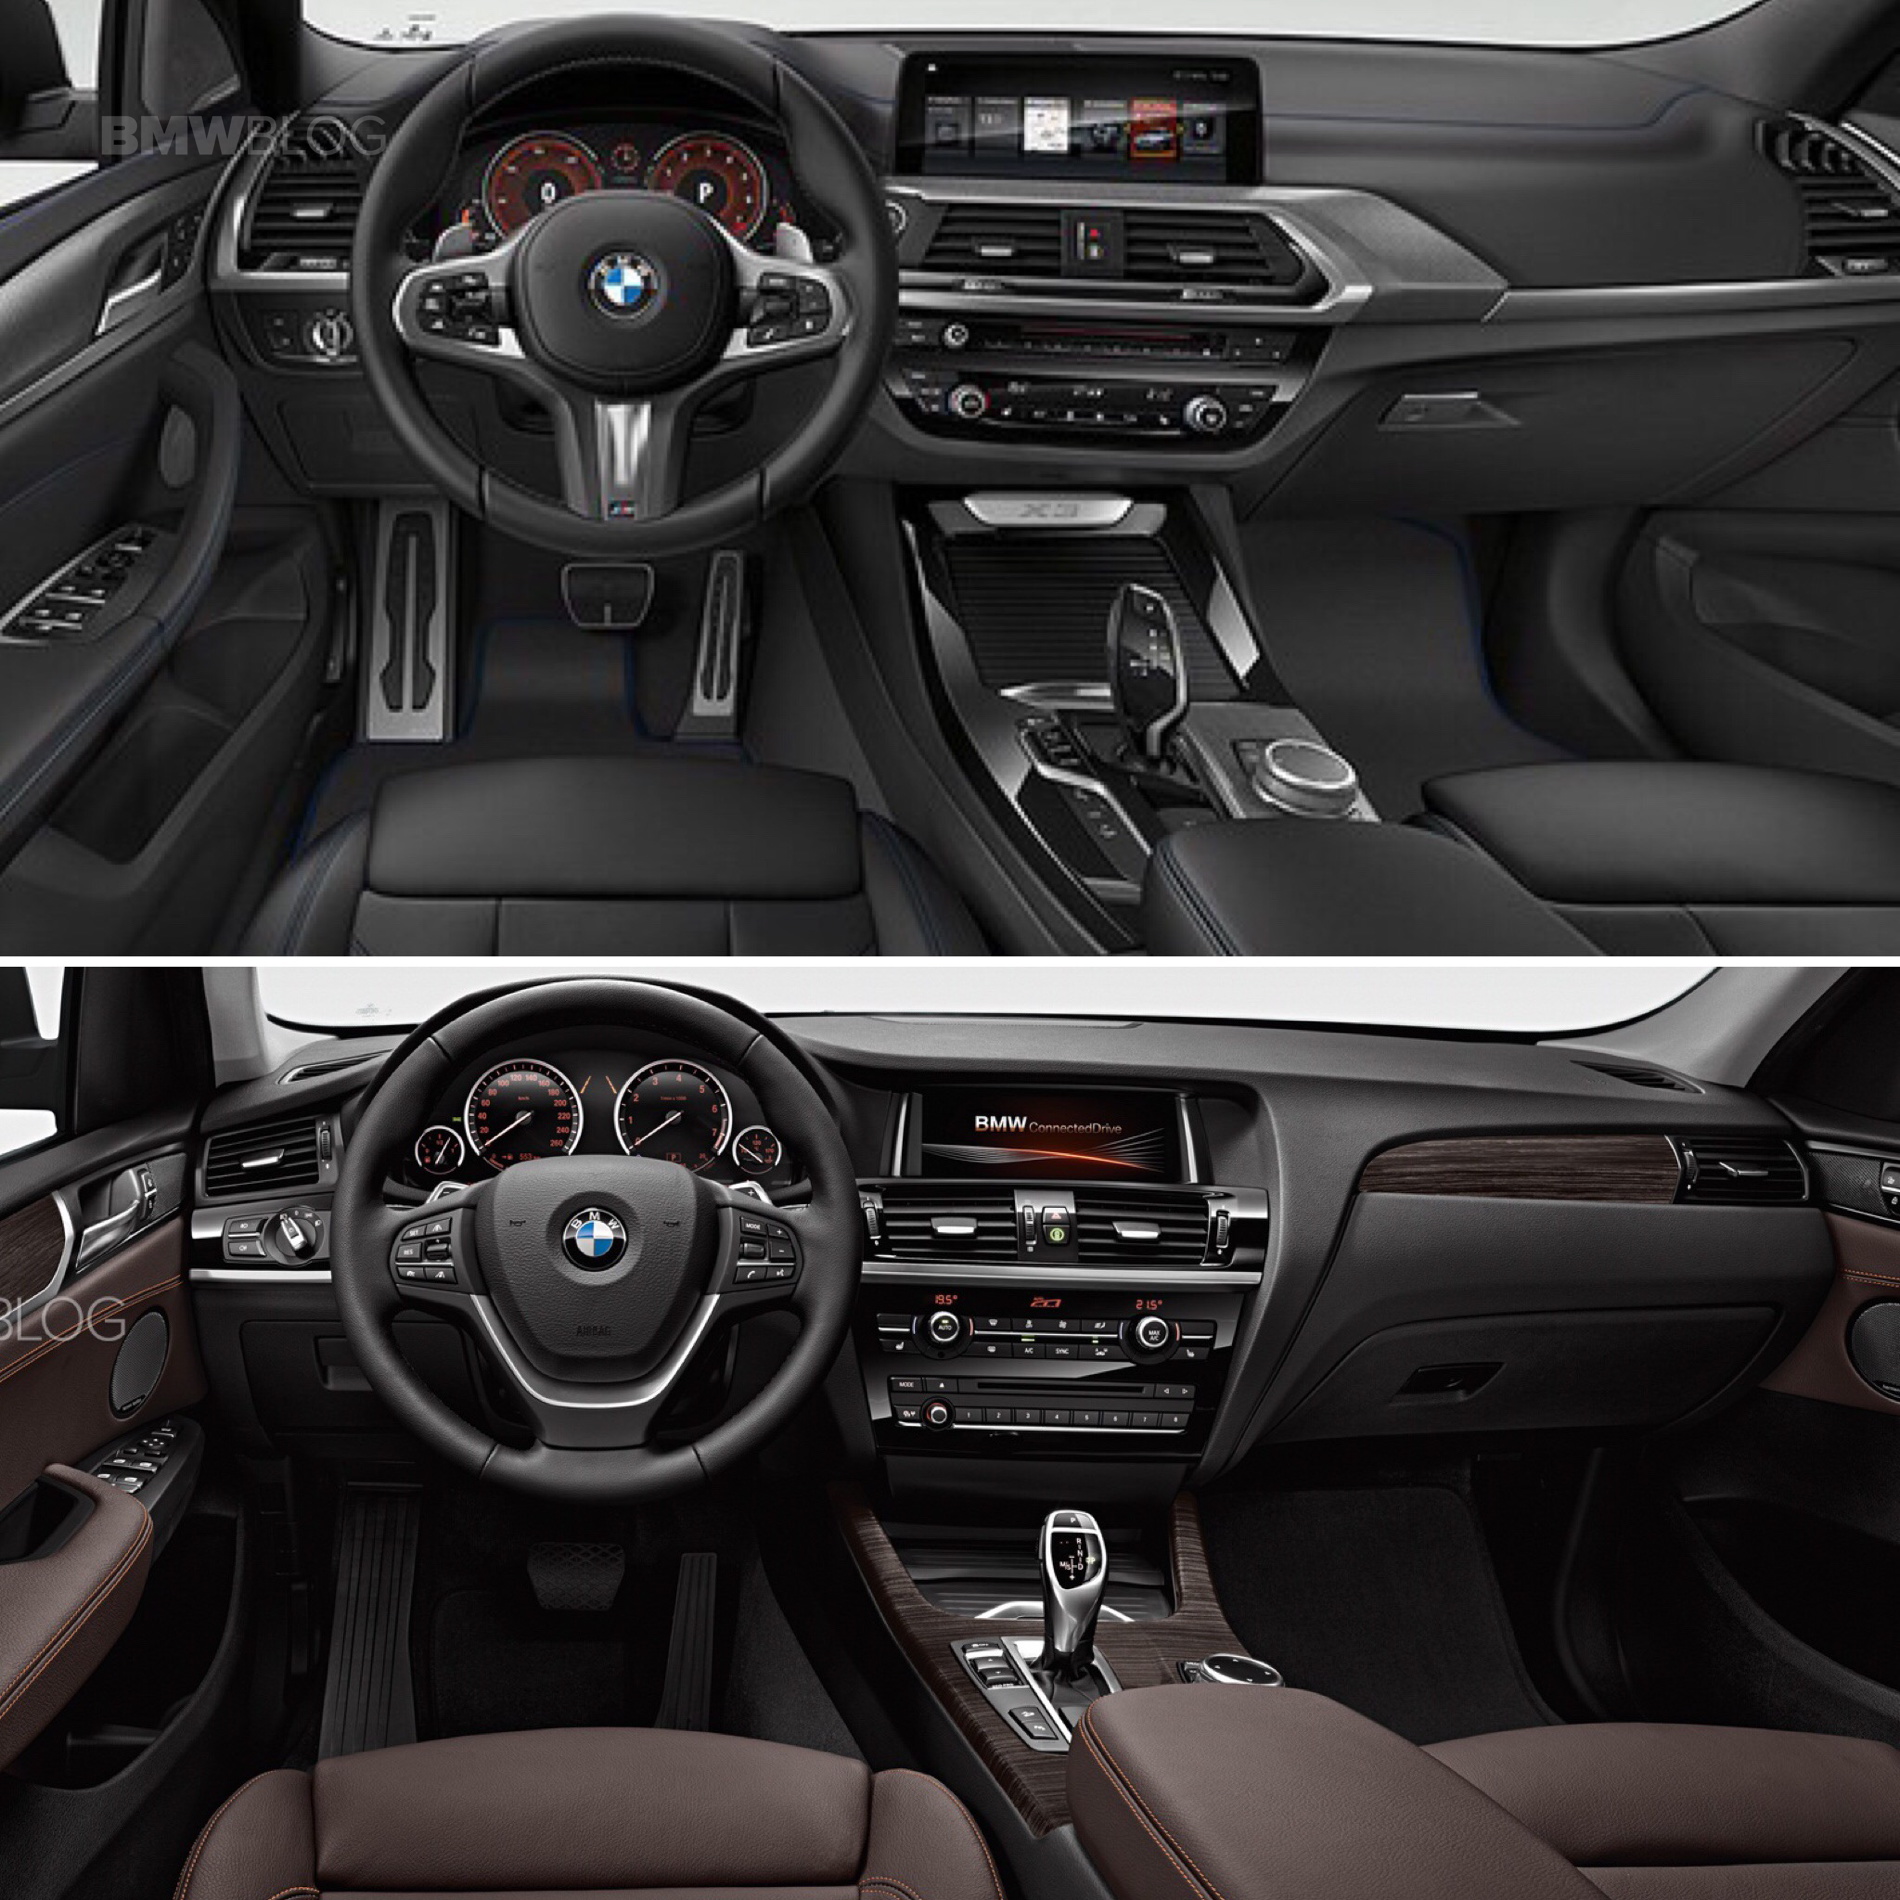 Photo Comparison: G01 BMW X3 vs F25 BMW X3